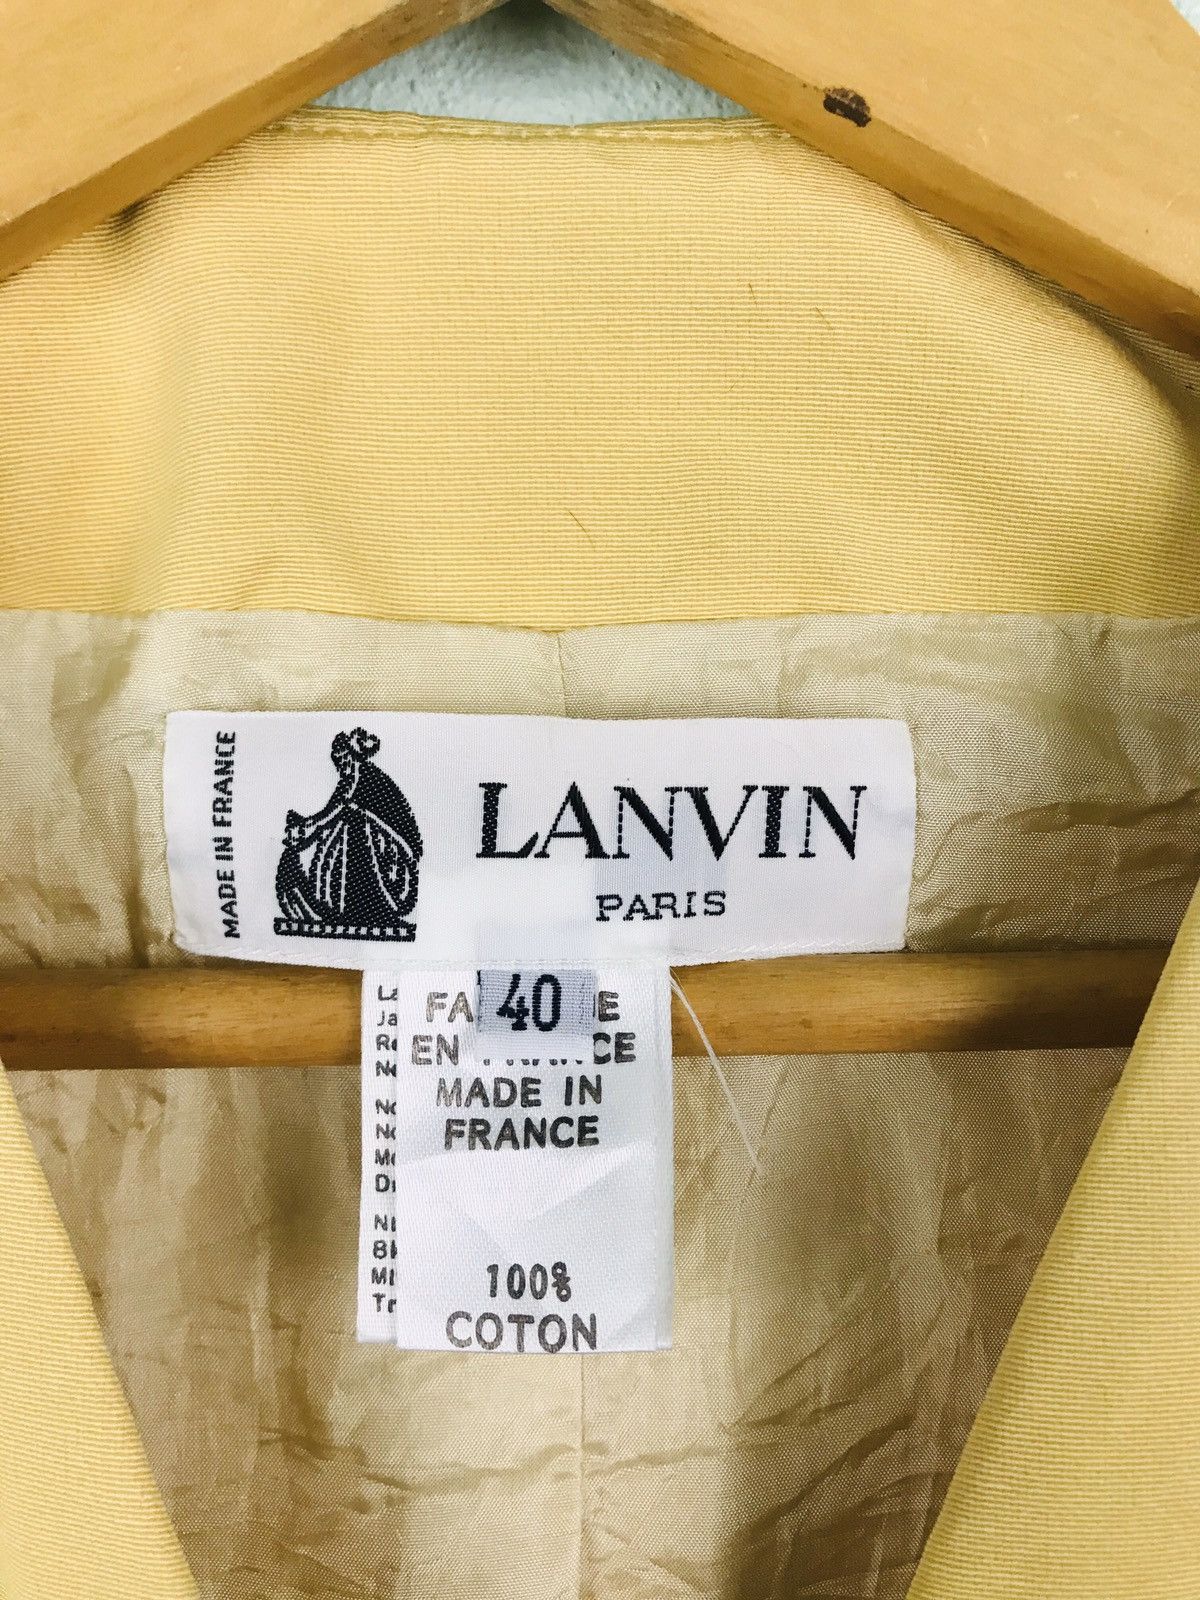 Lanvin Paris jacket with gold button - gh1519 - 4